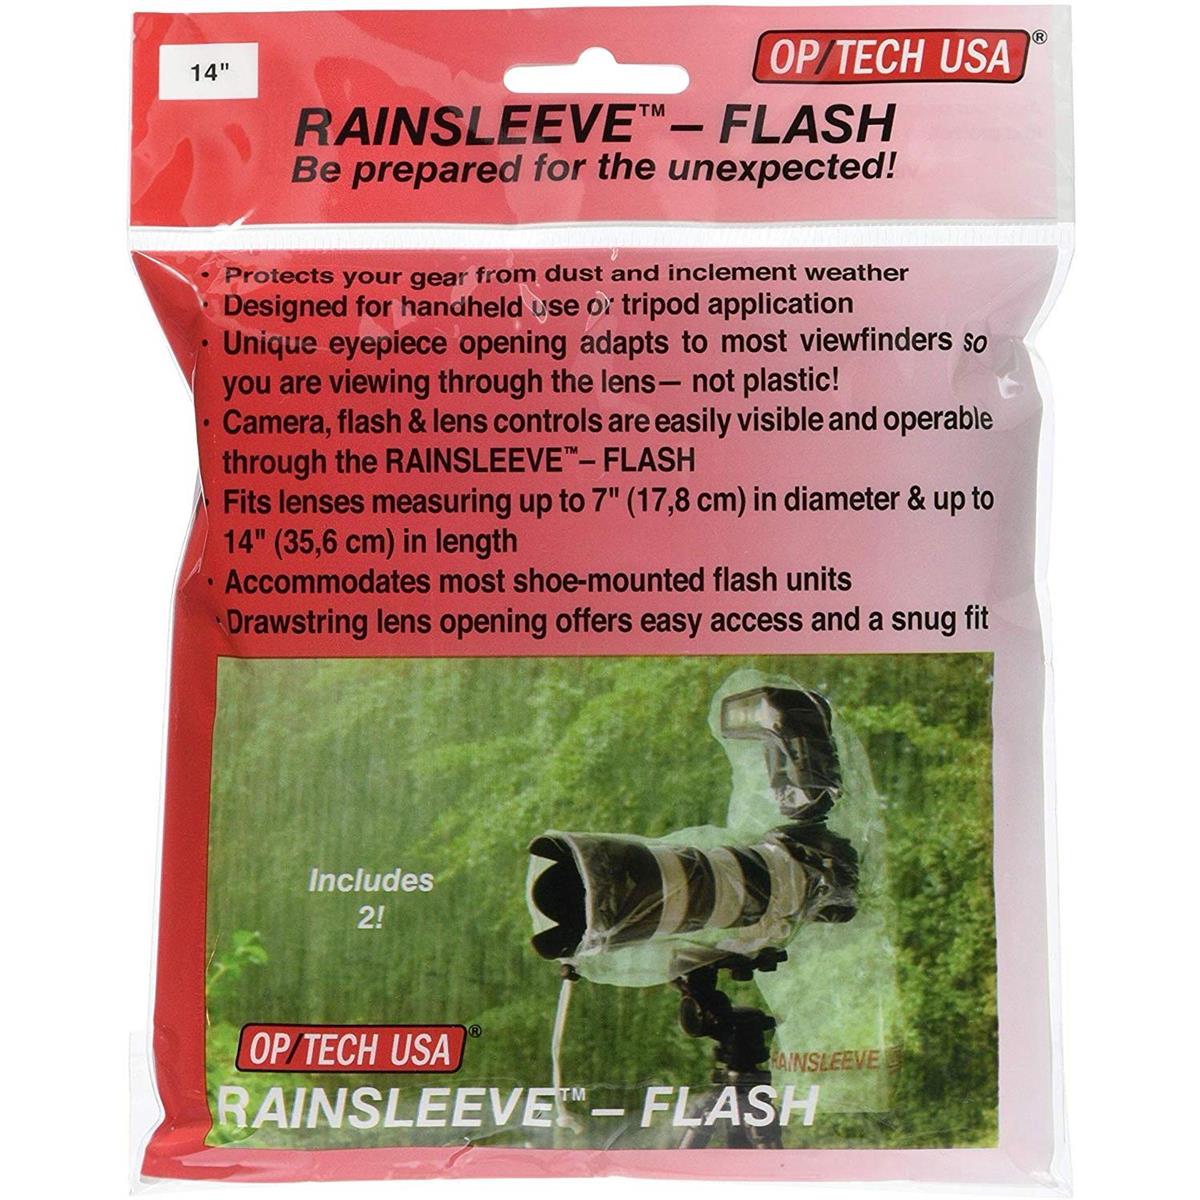 Op/Tech 14" Rainsleeve Flash - 2 Pack